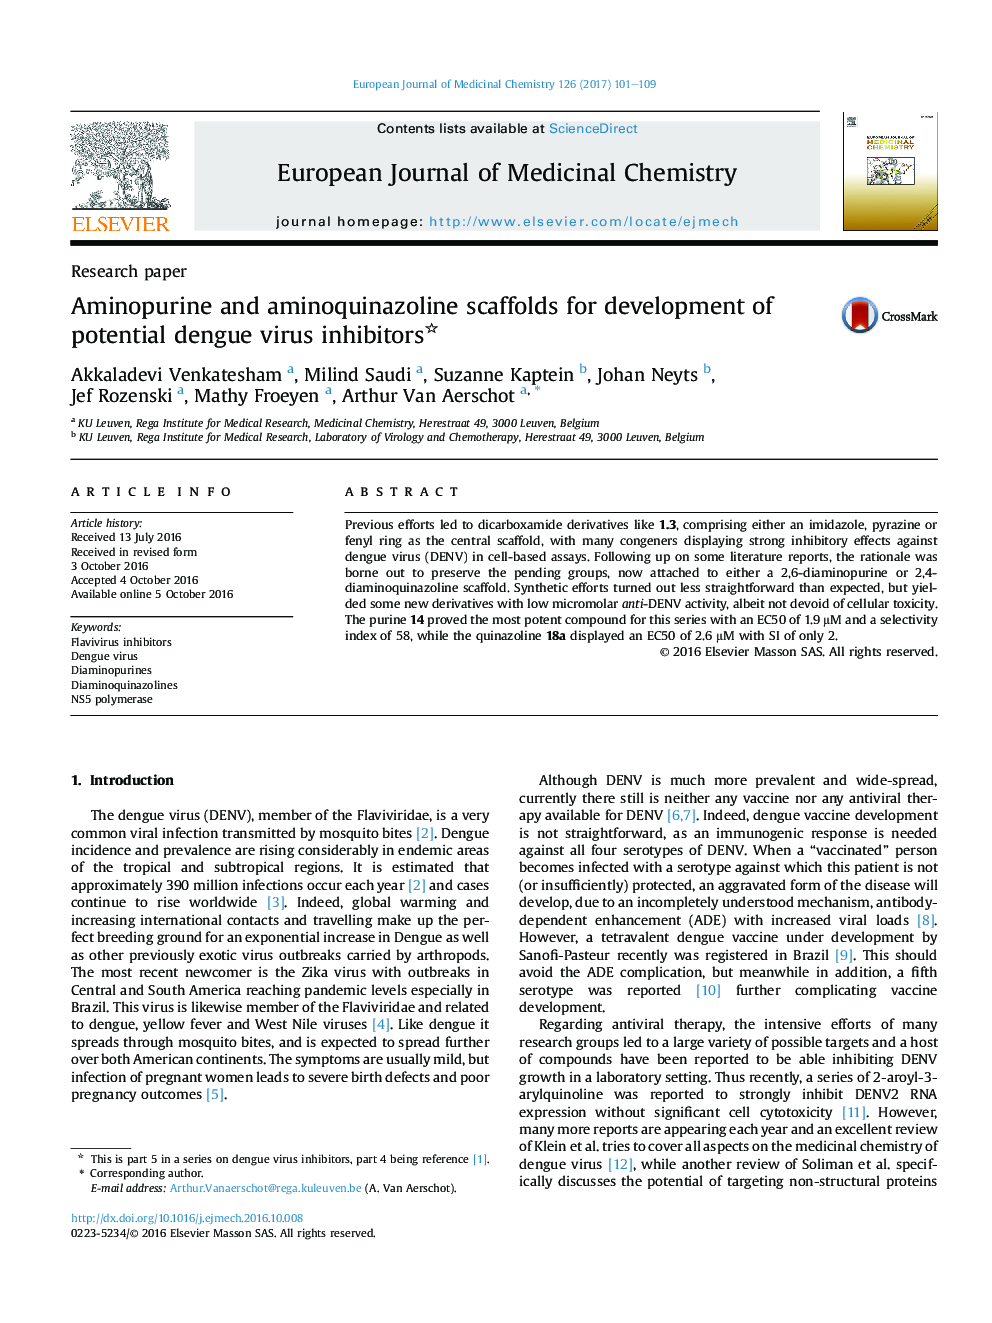 داربست آمینوپورین و آمینو کینازولین برای توسعه مهارکننده های بالقوه دنگی 